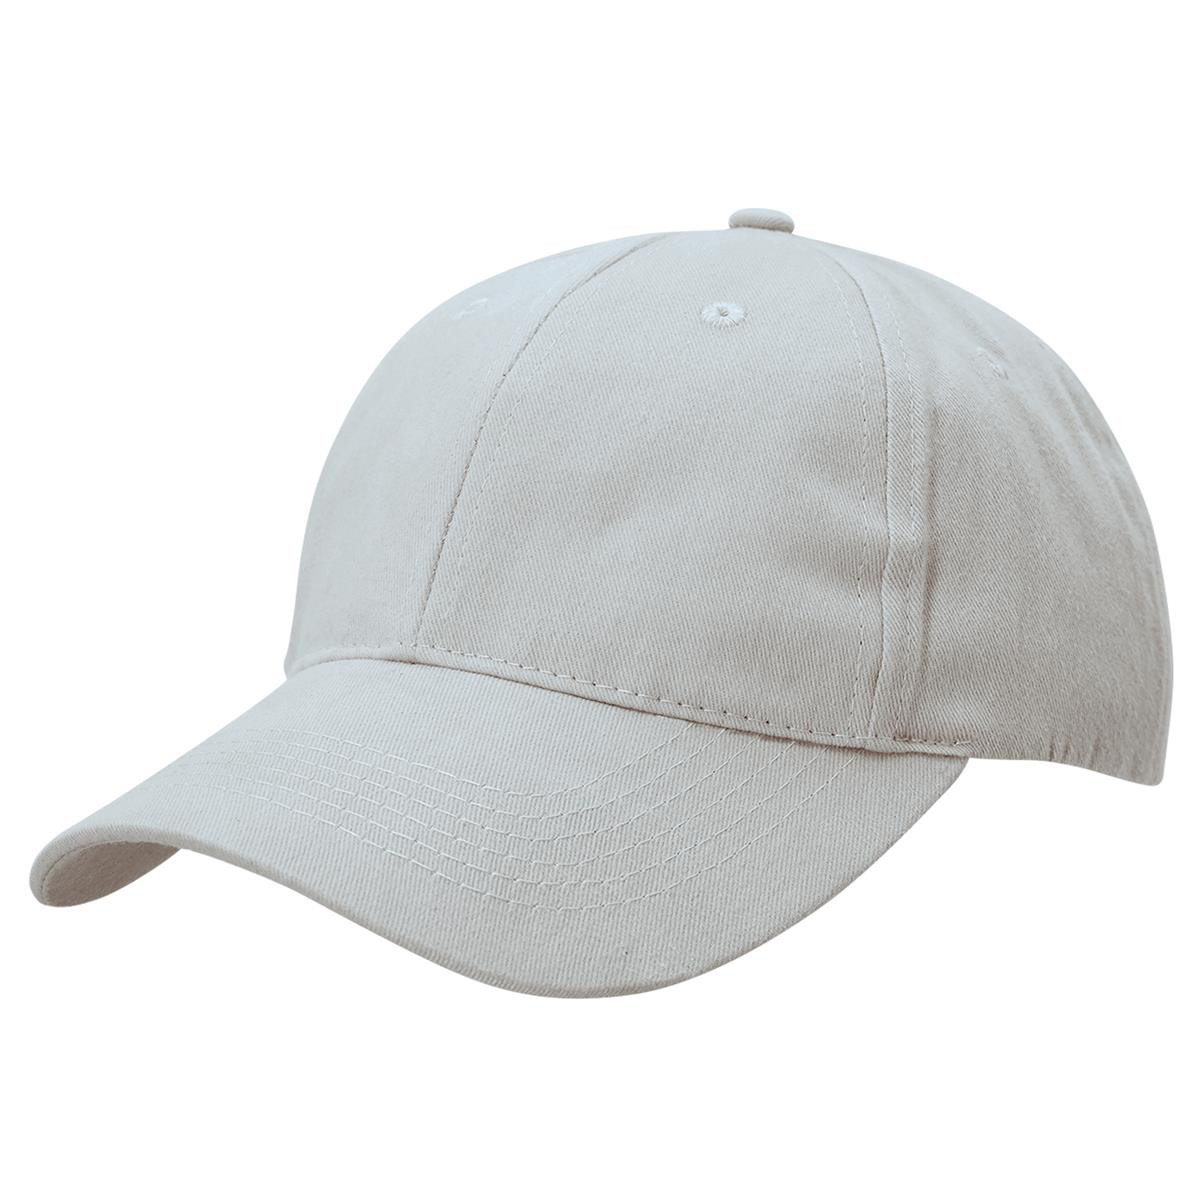 Premium Soft Cotton Cap - Better Promo